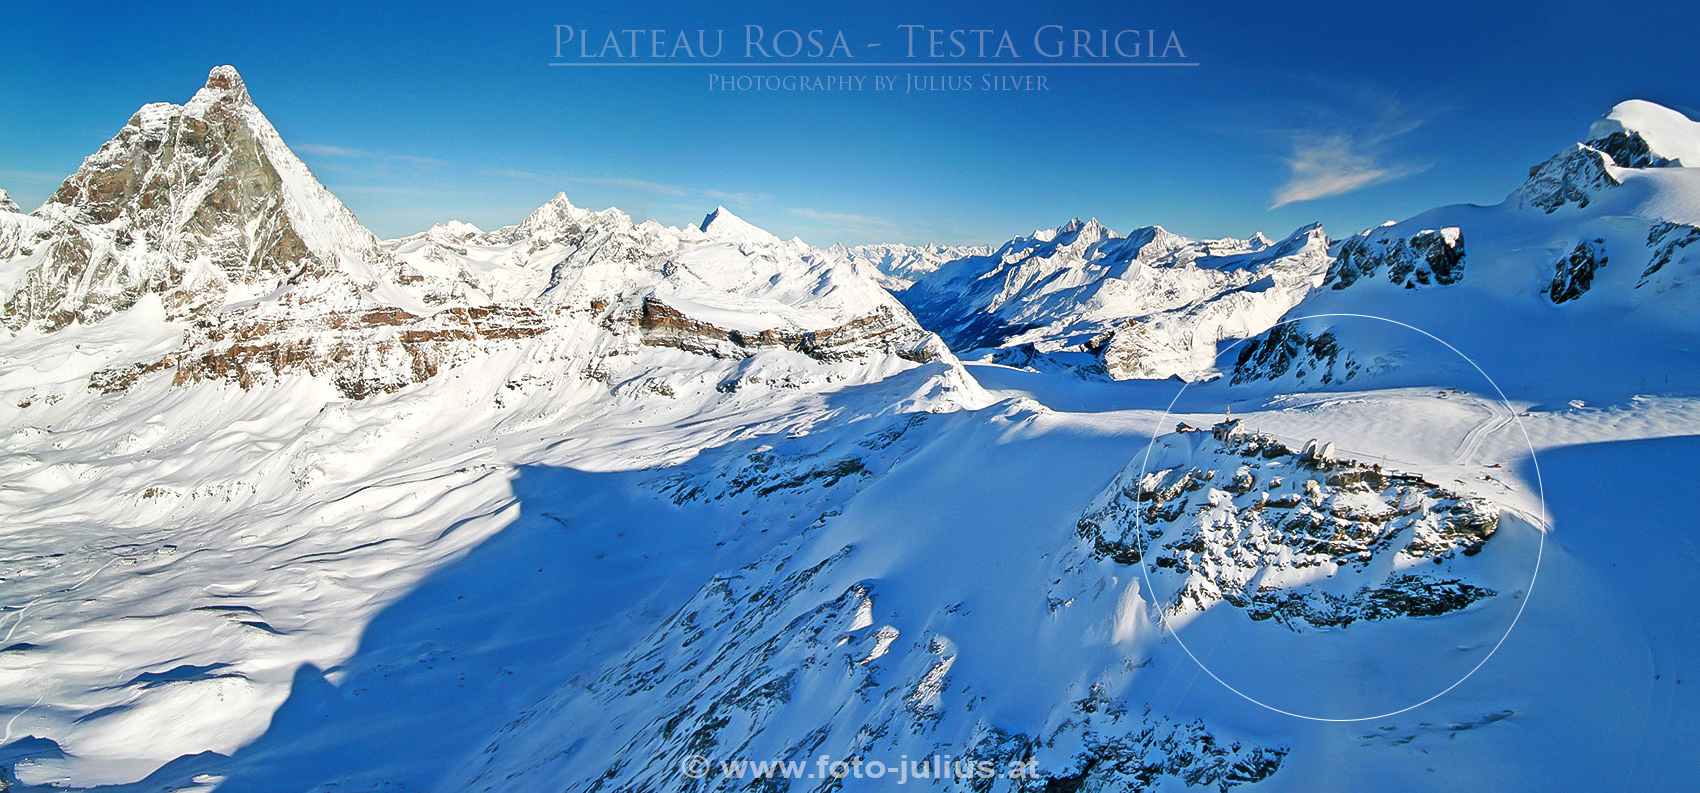 0654a_Ski_Area_Plateau_Rosa_Testa_Grigia.jpg, 839kB